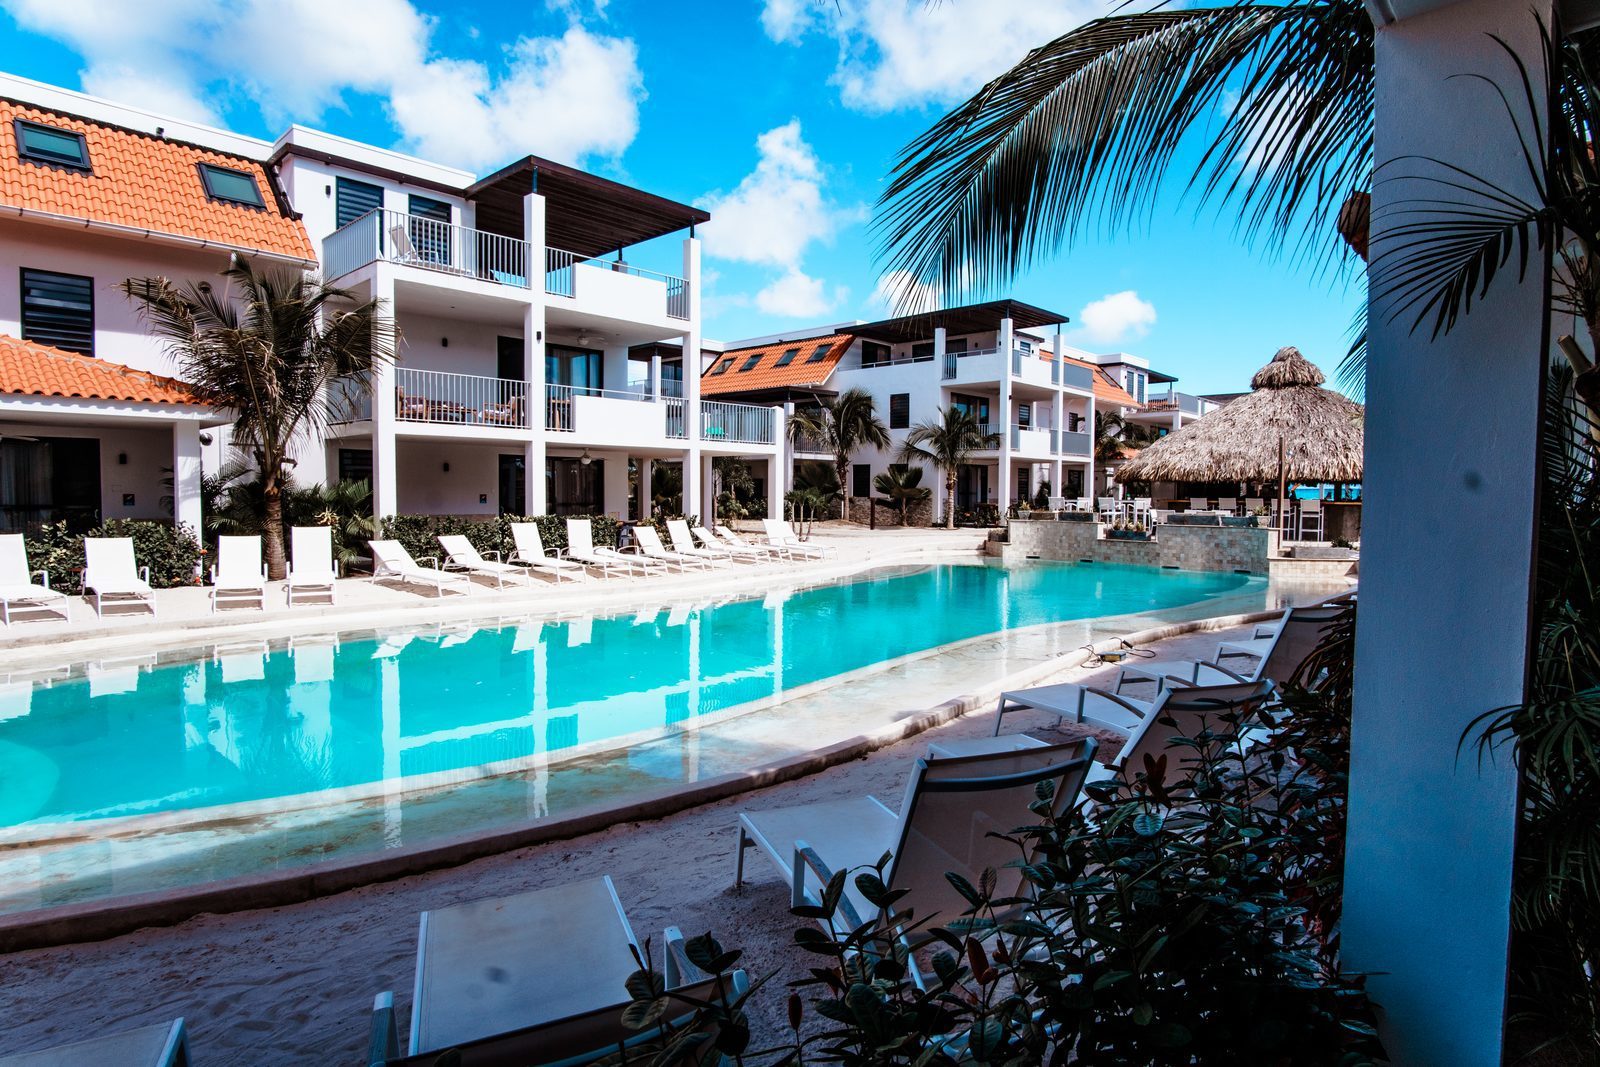 Resort Bonaire est l'un des beaux hôtels de Bonaire. L'hôtel propose, entre autres choses, une belle piscine. 